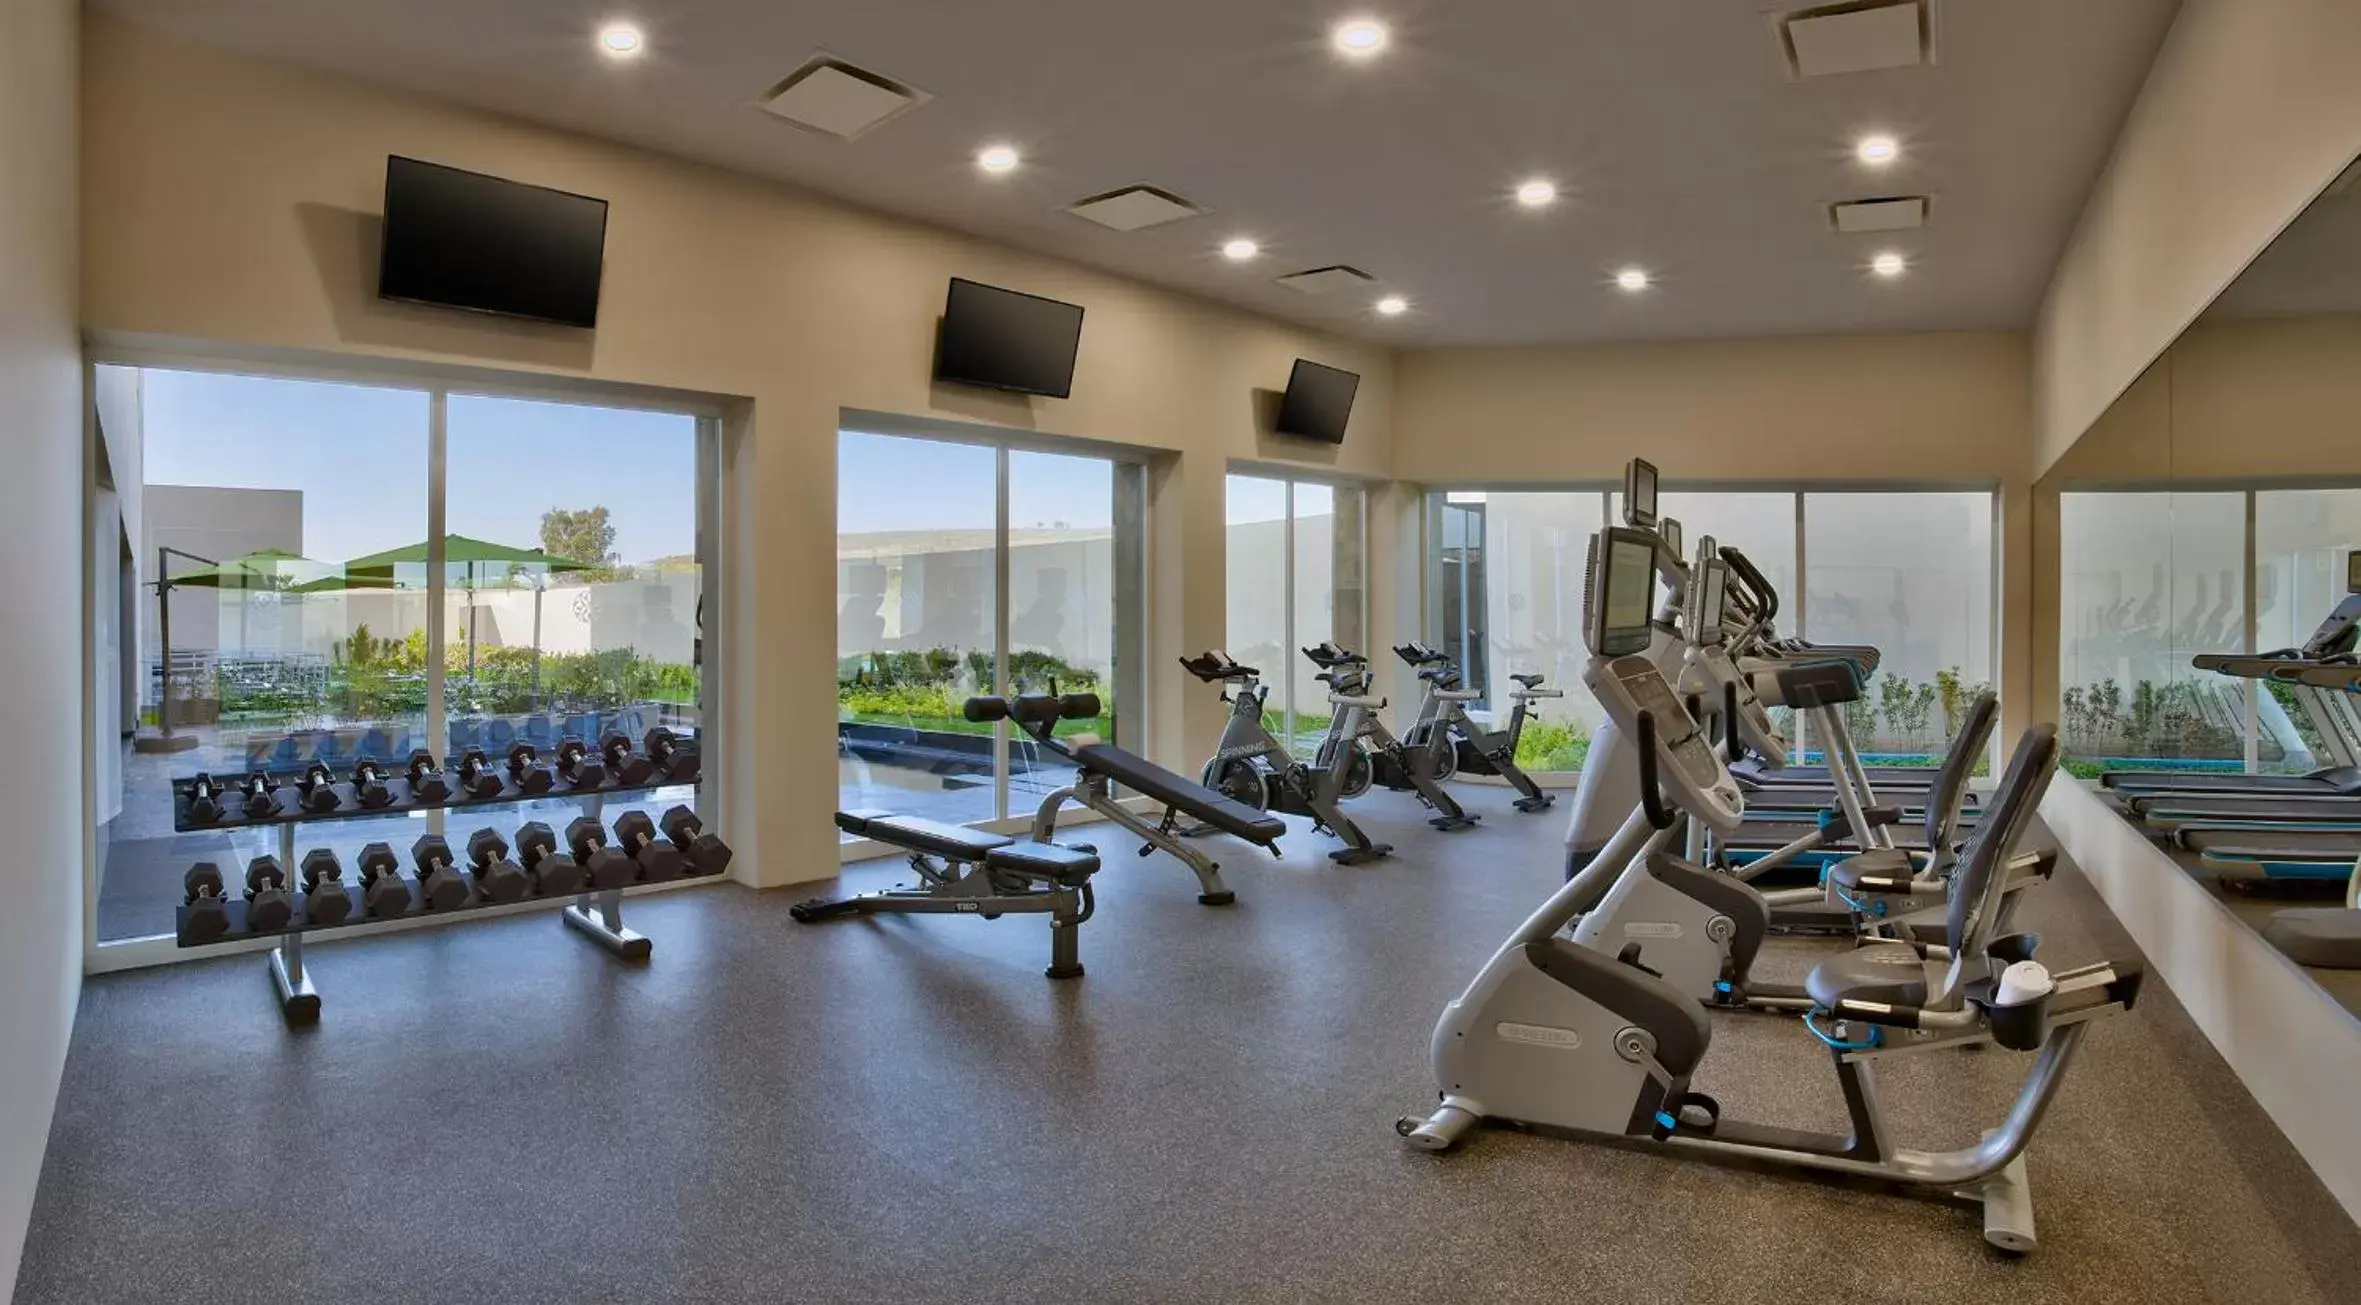 Fitness centre/facilities, Fitness Center/Facilities in Galeria Plaza Irapuato